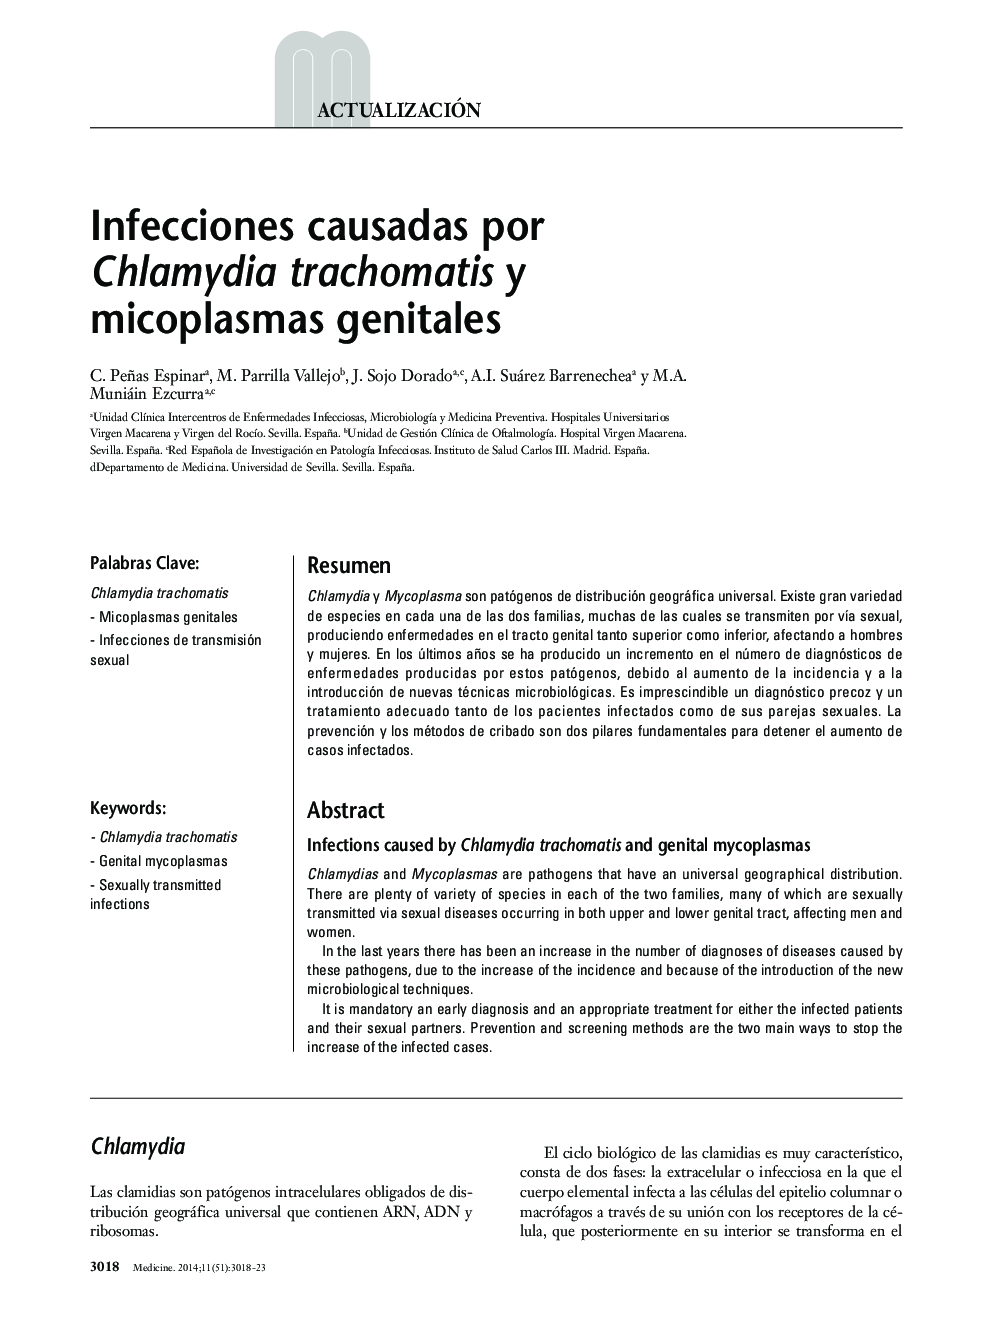 Infecciones causadas por Chlamydia trachomatis y micoplasmas genitales